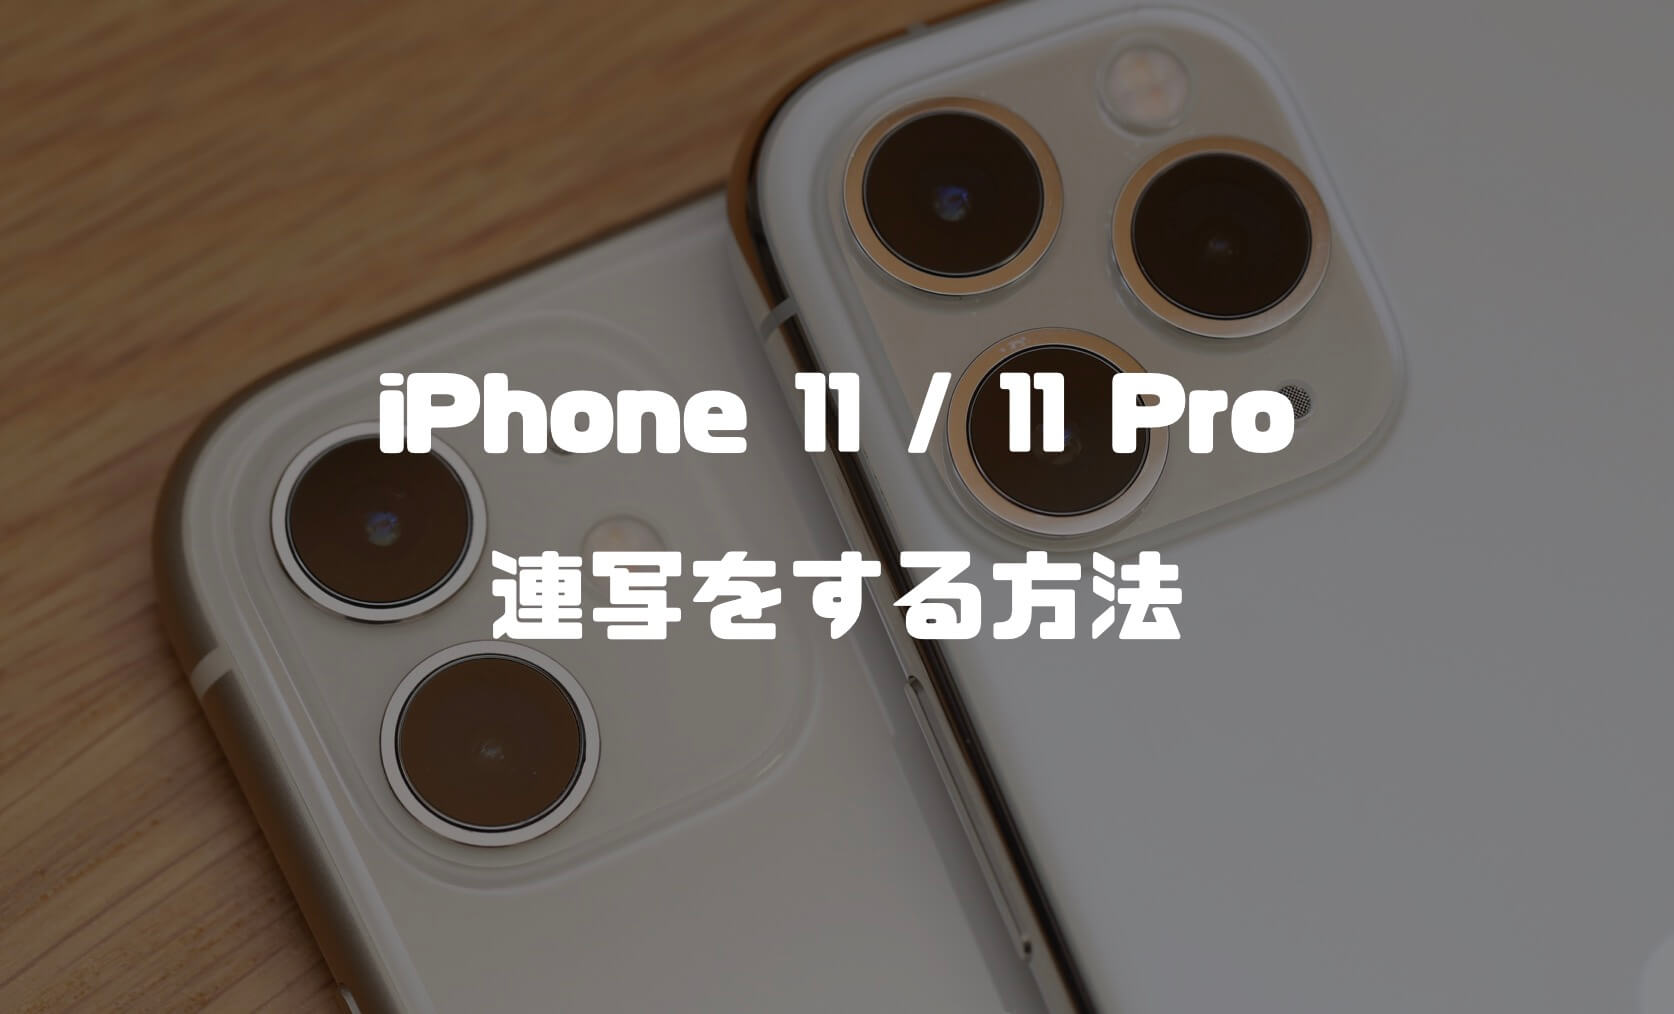 Iphone 13 12 11 11 Pro Seで連写する方法紹介 これまでのiphoneとは操作が違う カメラ Imagination